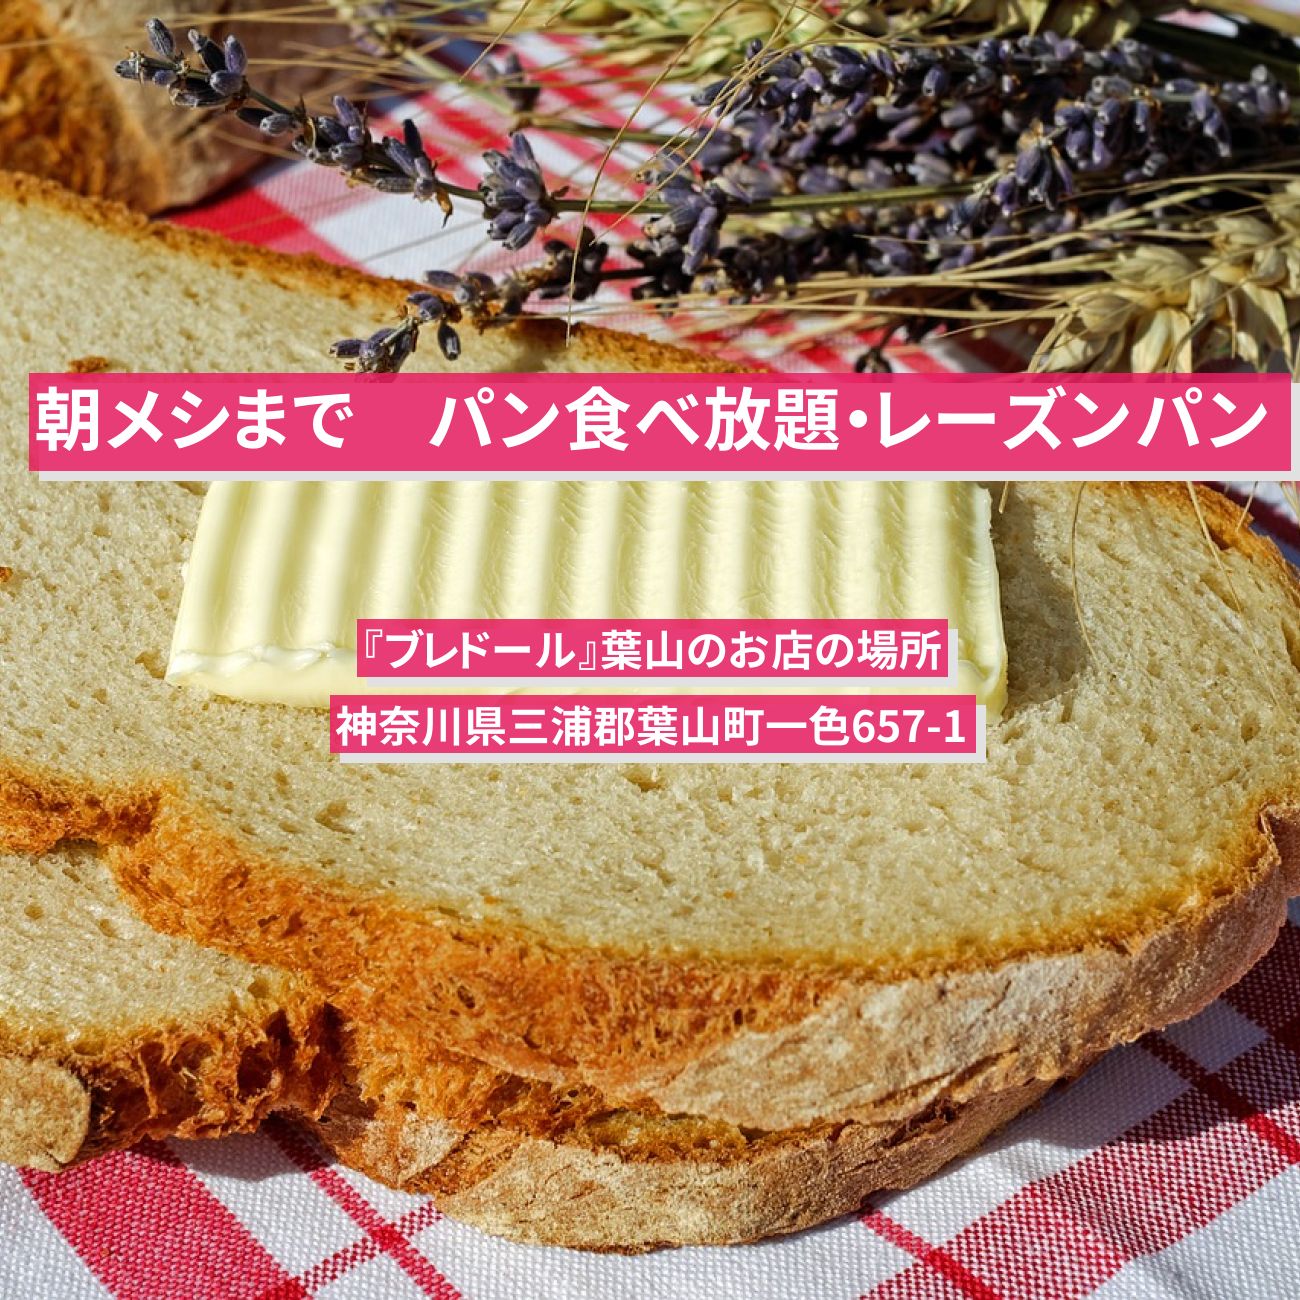 【朝メシまで】葉山のパン食べ放題・レーズンパン『ブレドール』お店の場所